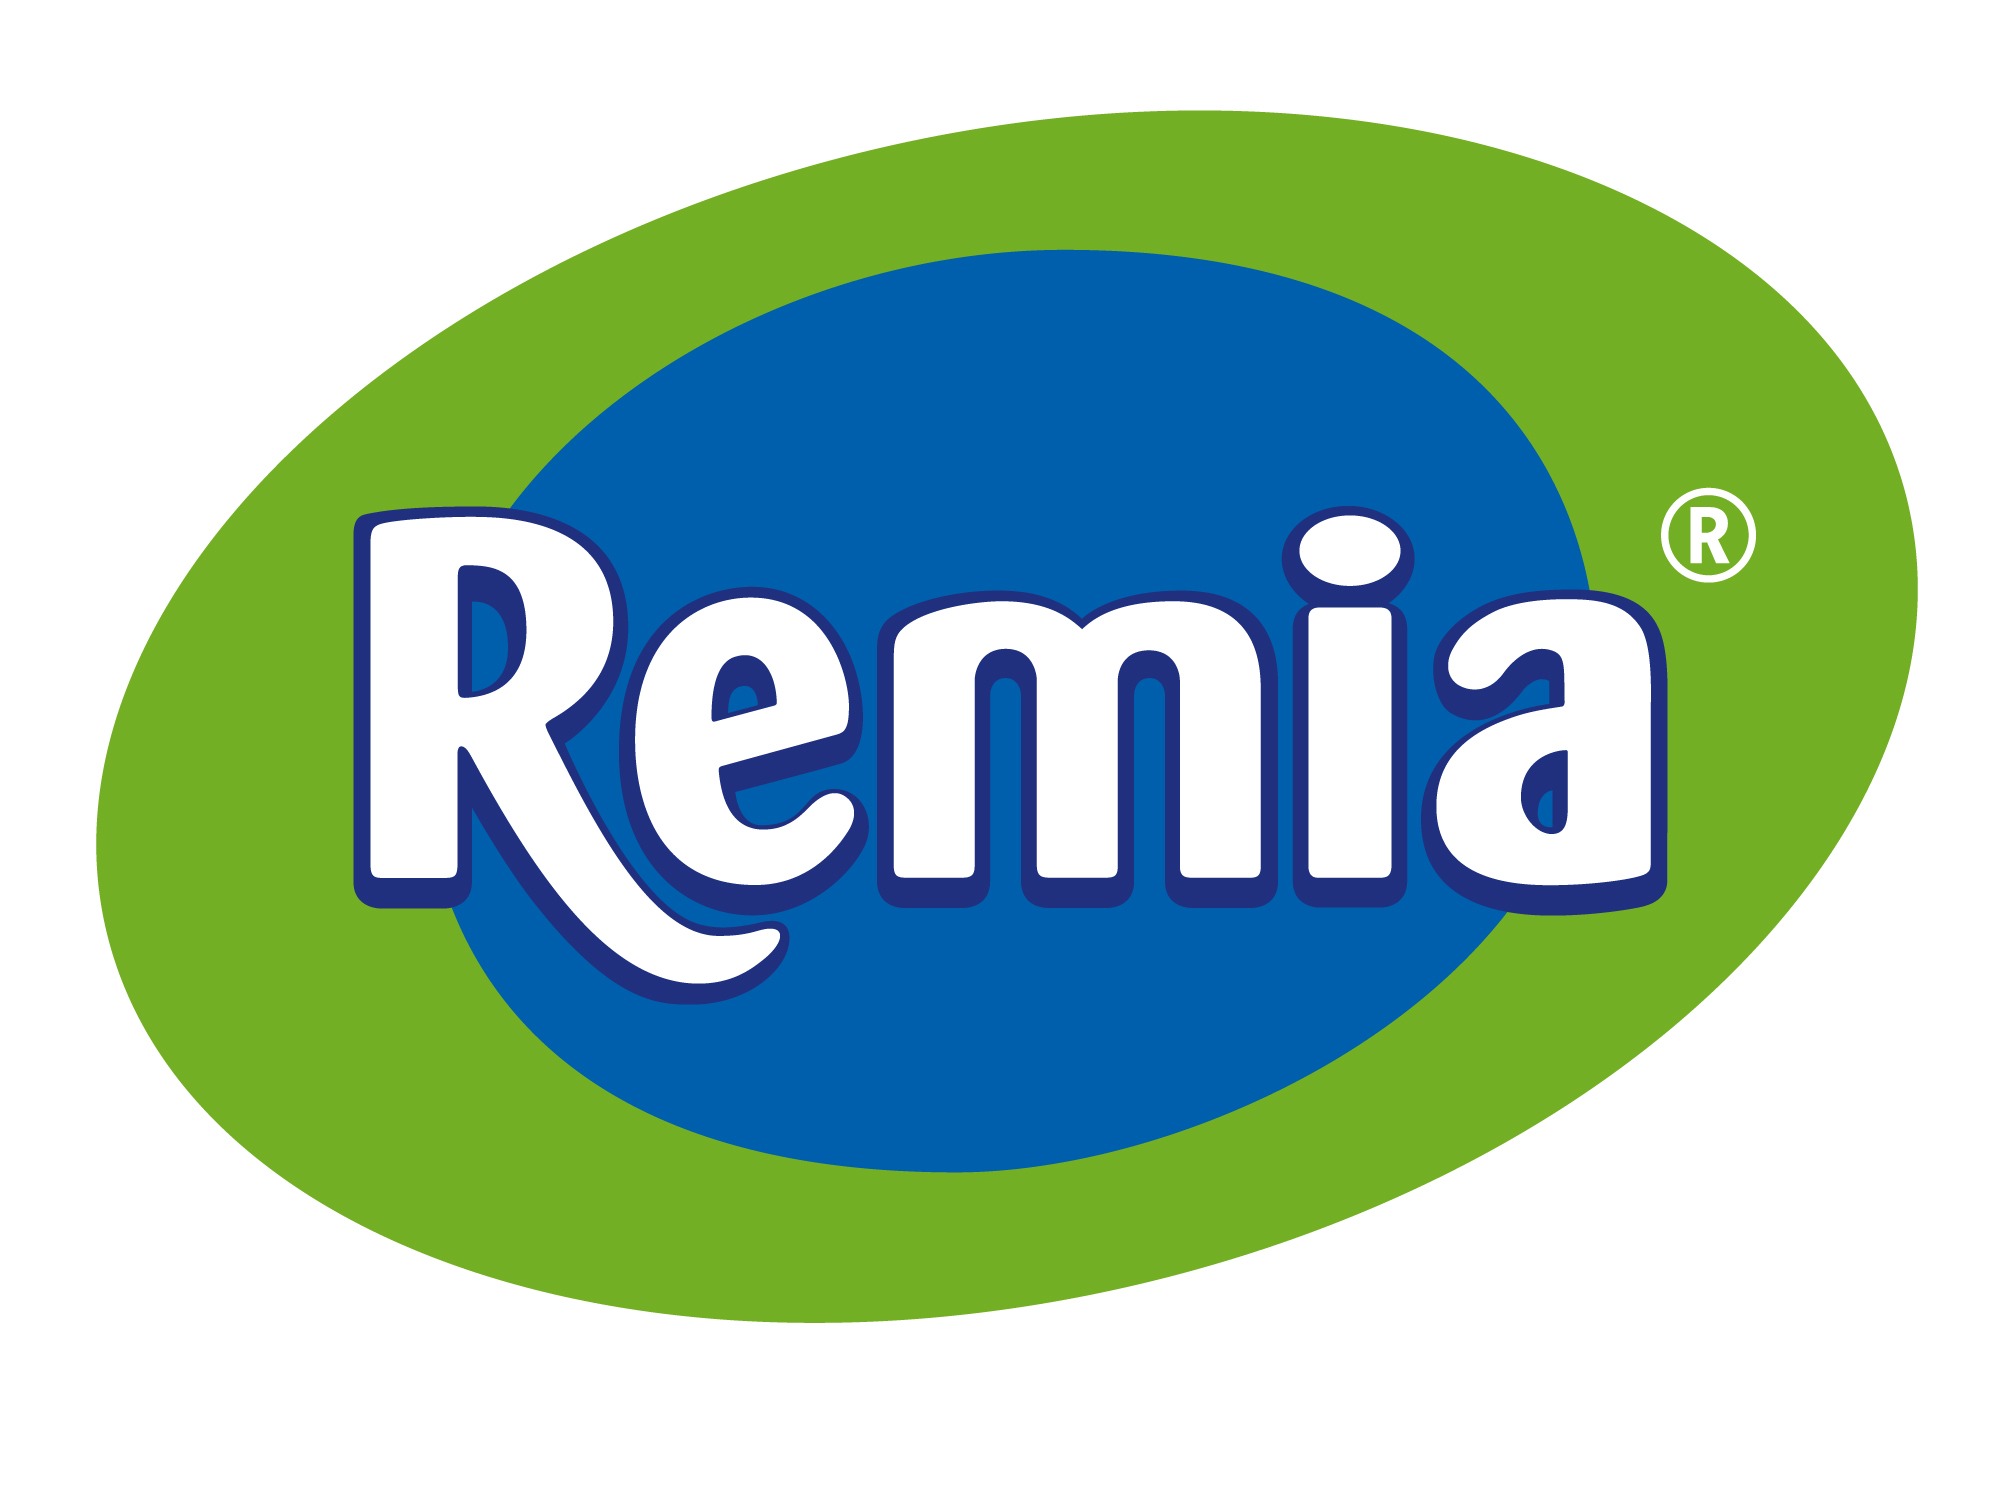 Remia CV